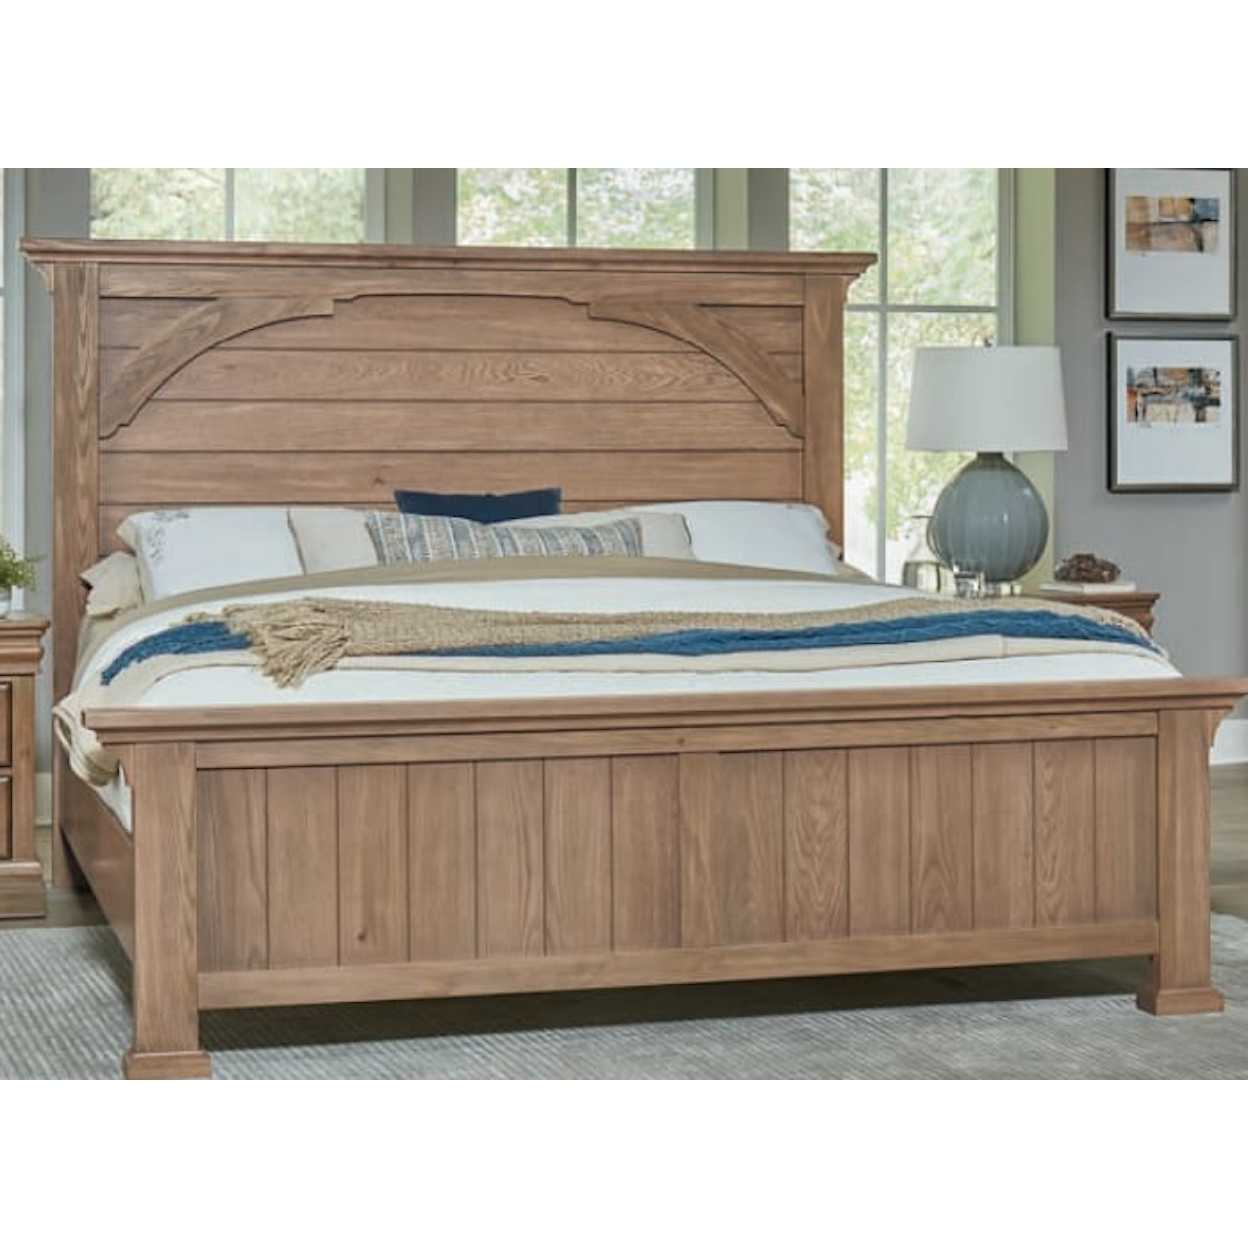 Carolina Bedroom Vista King Mansion Bed with Metal Support Slats